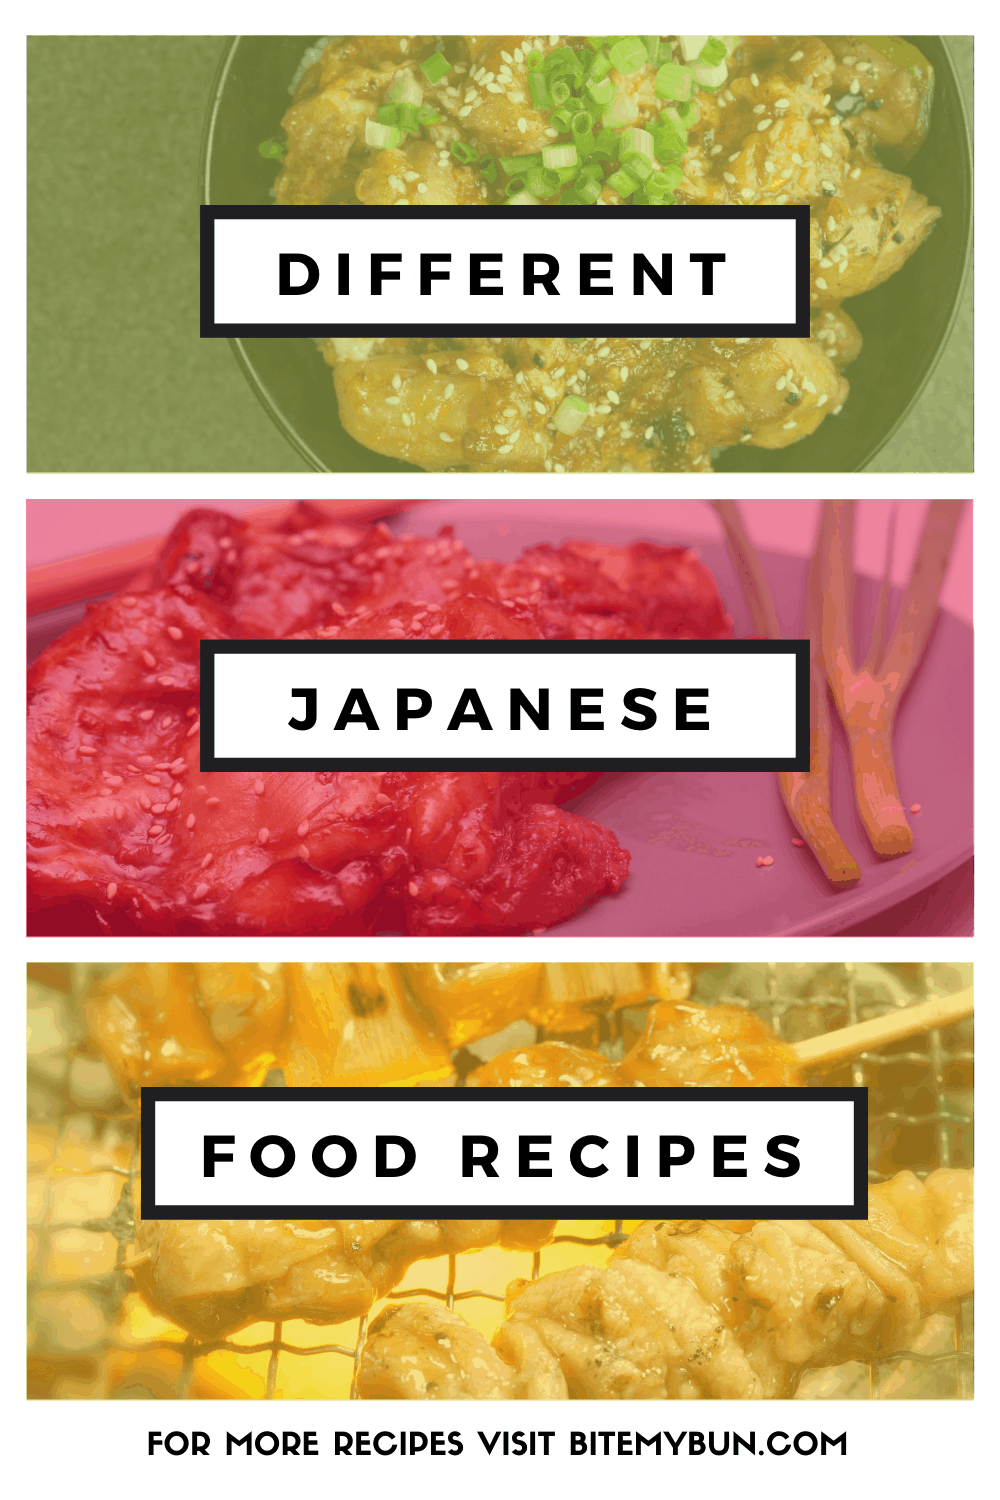 Recettes de cuisine japonaise